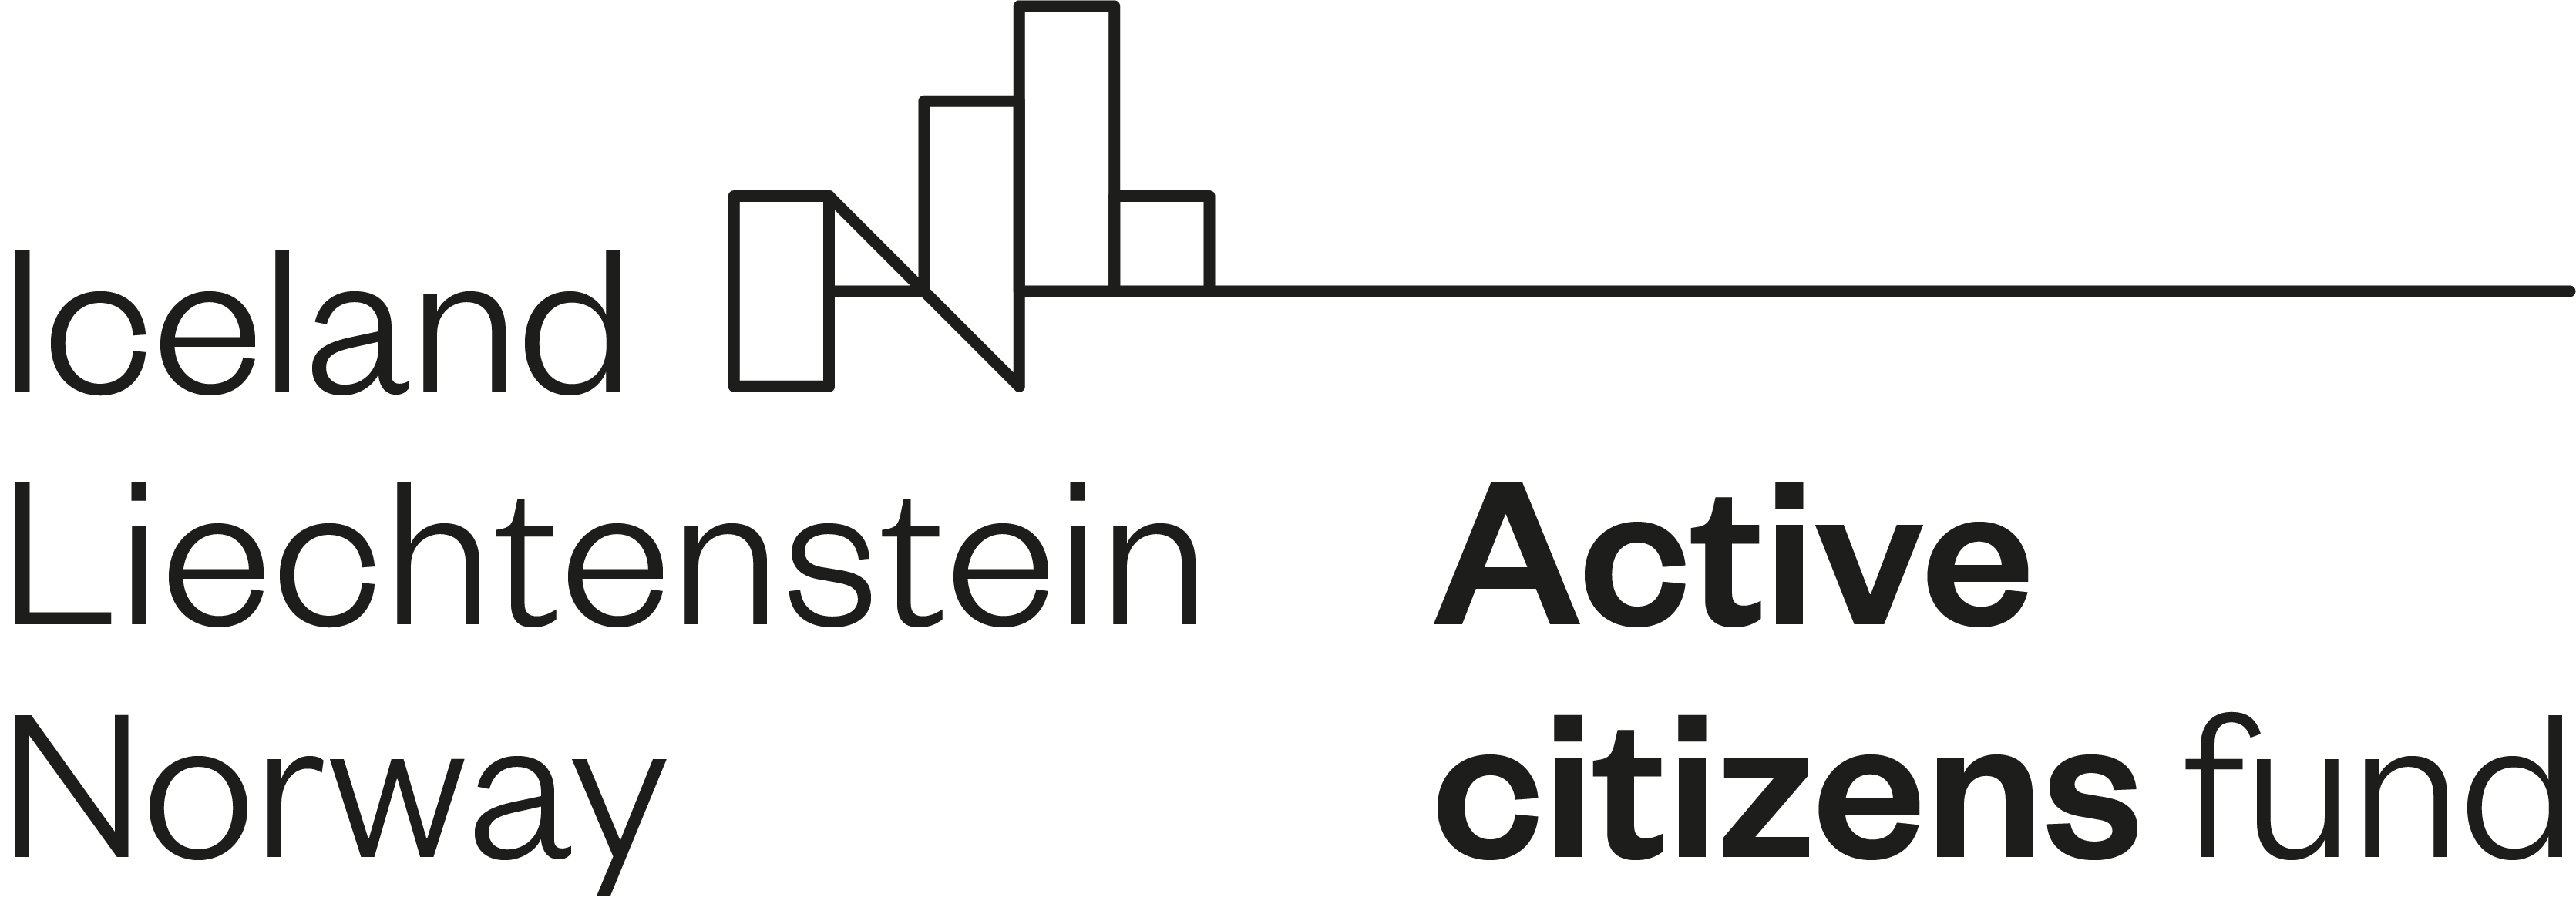 Active Citizen's Fund